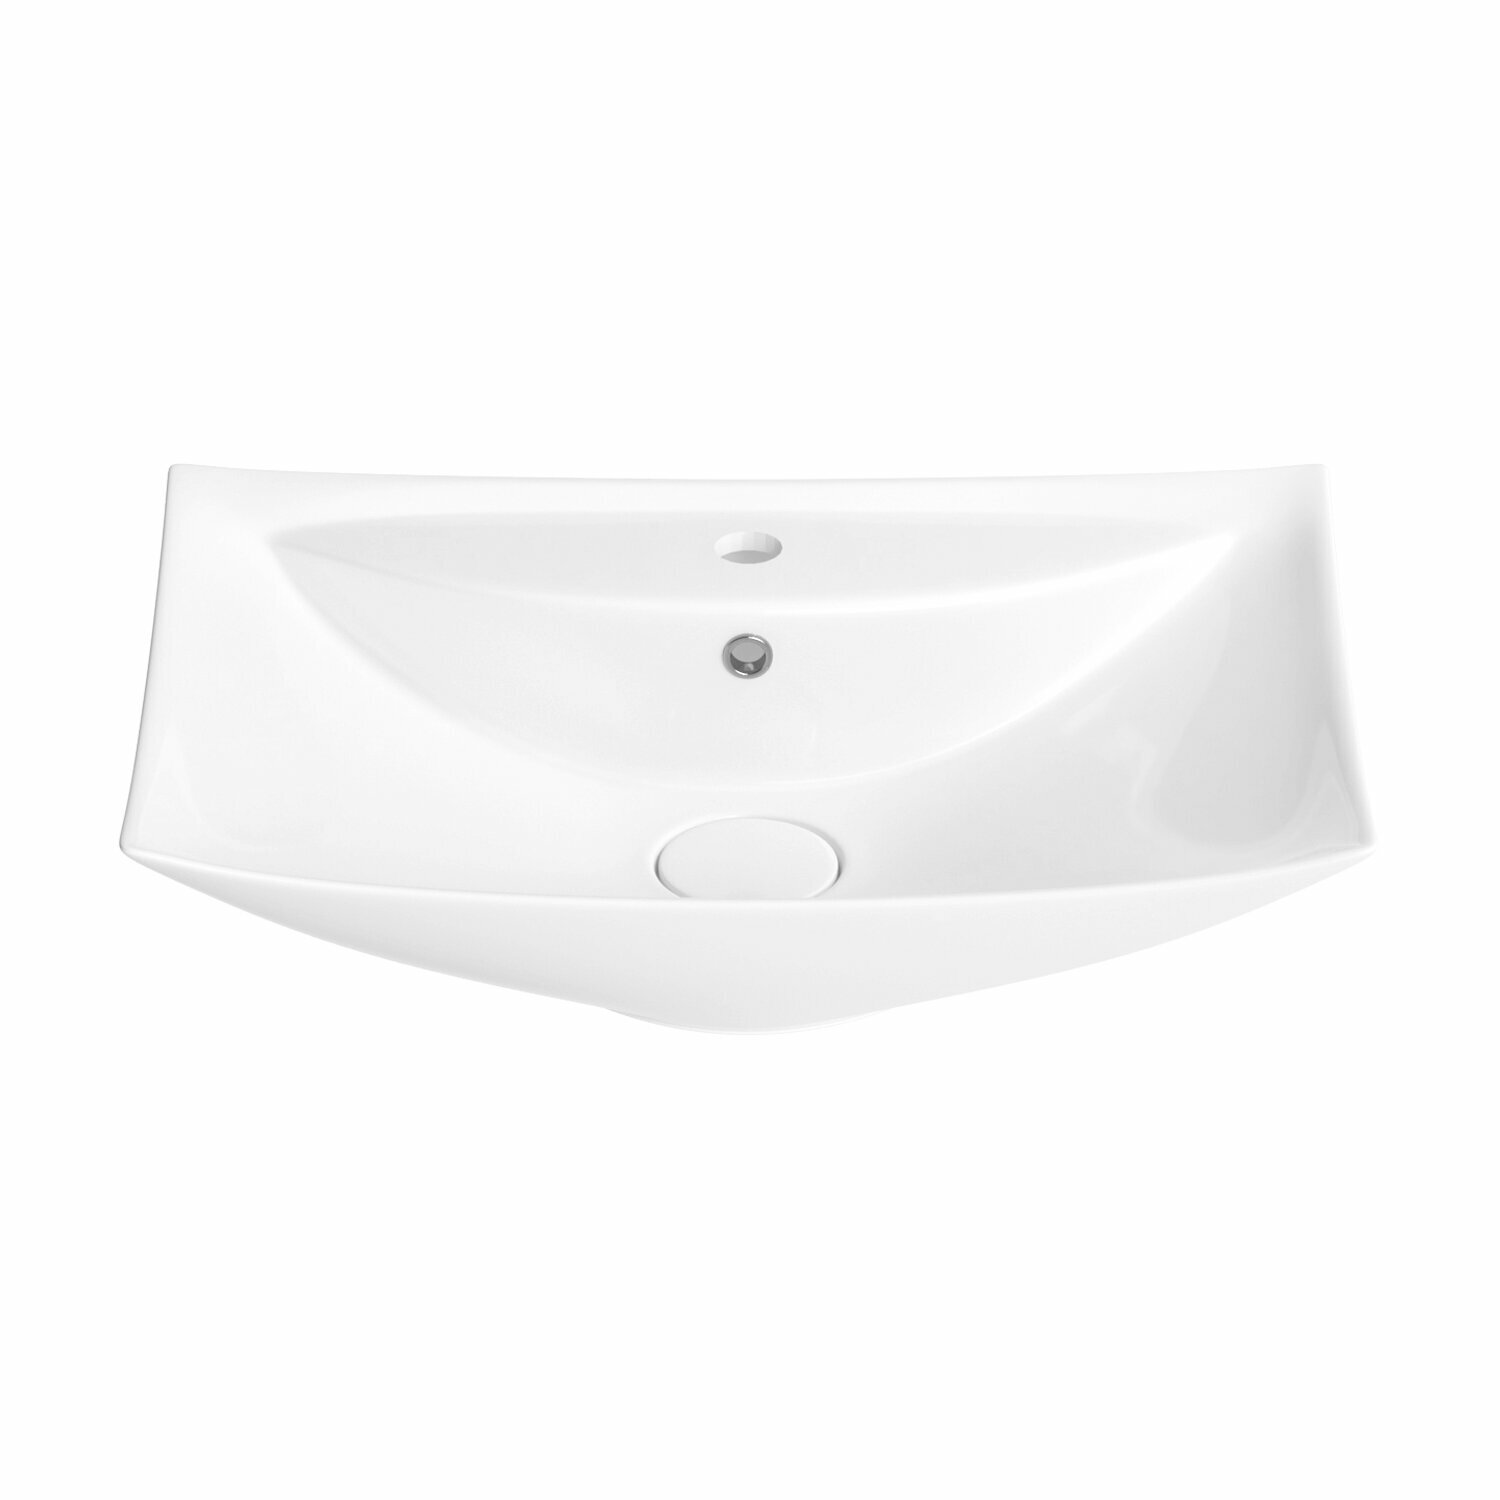 Накладная раковина для ванной комнаты Wellsee Cerulean 151001000, ширина умывальника 60 см, цвет глянцевый белый